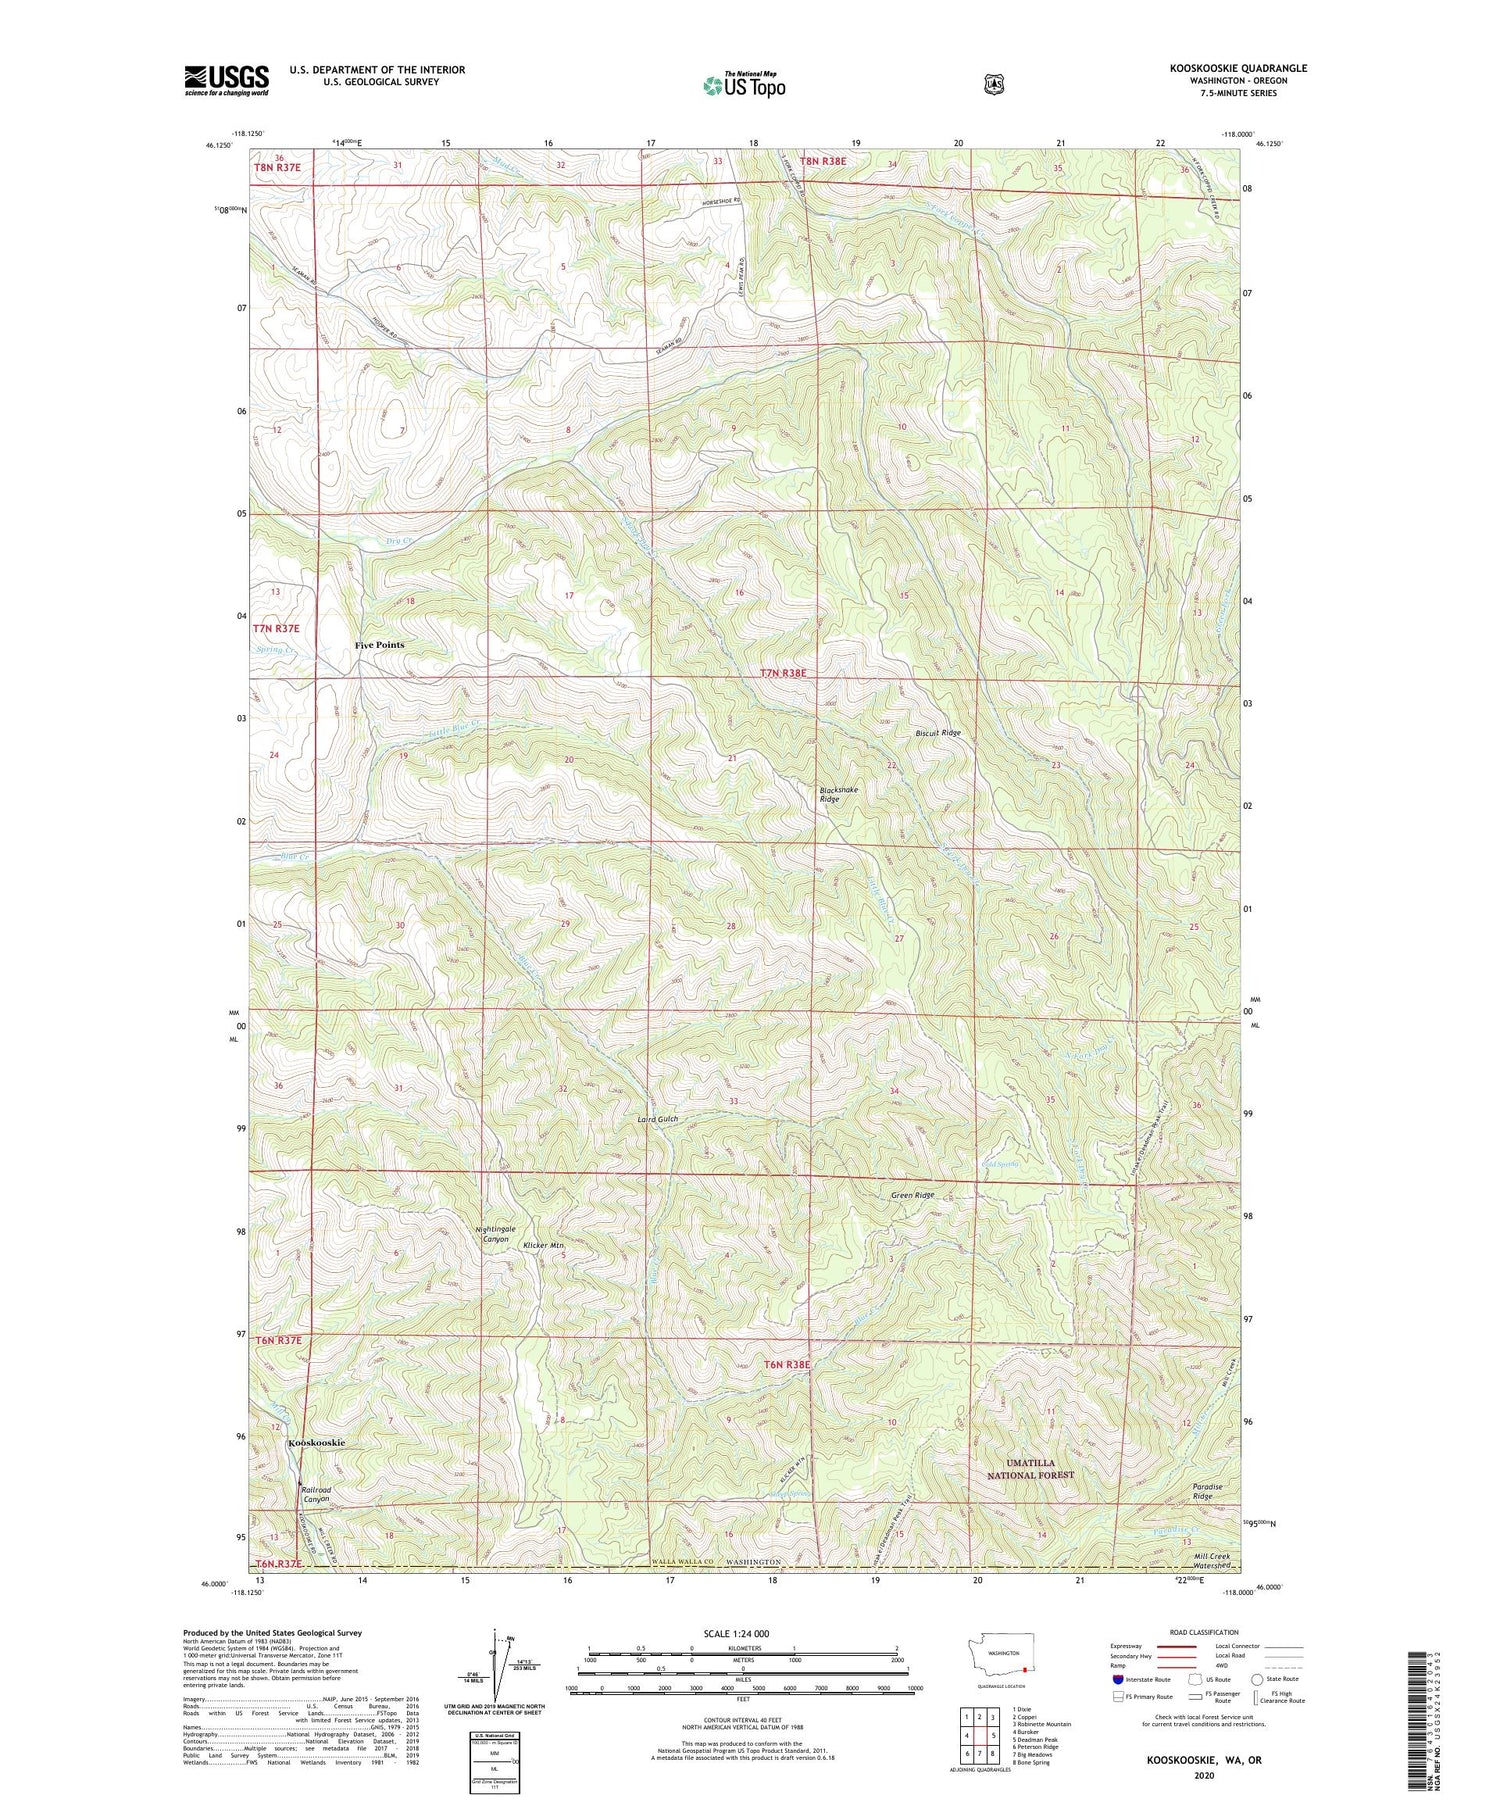 Kooskooskie Washington US Topo Map Image